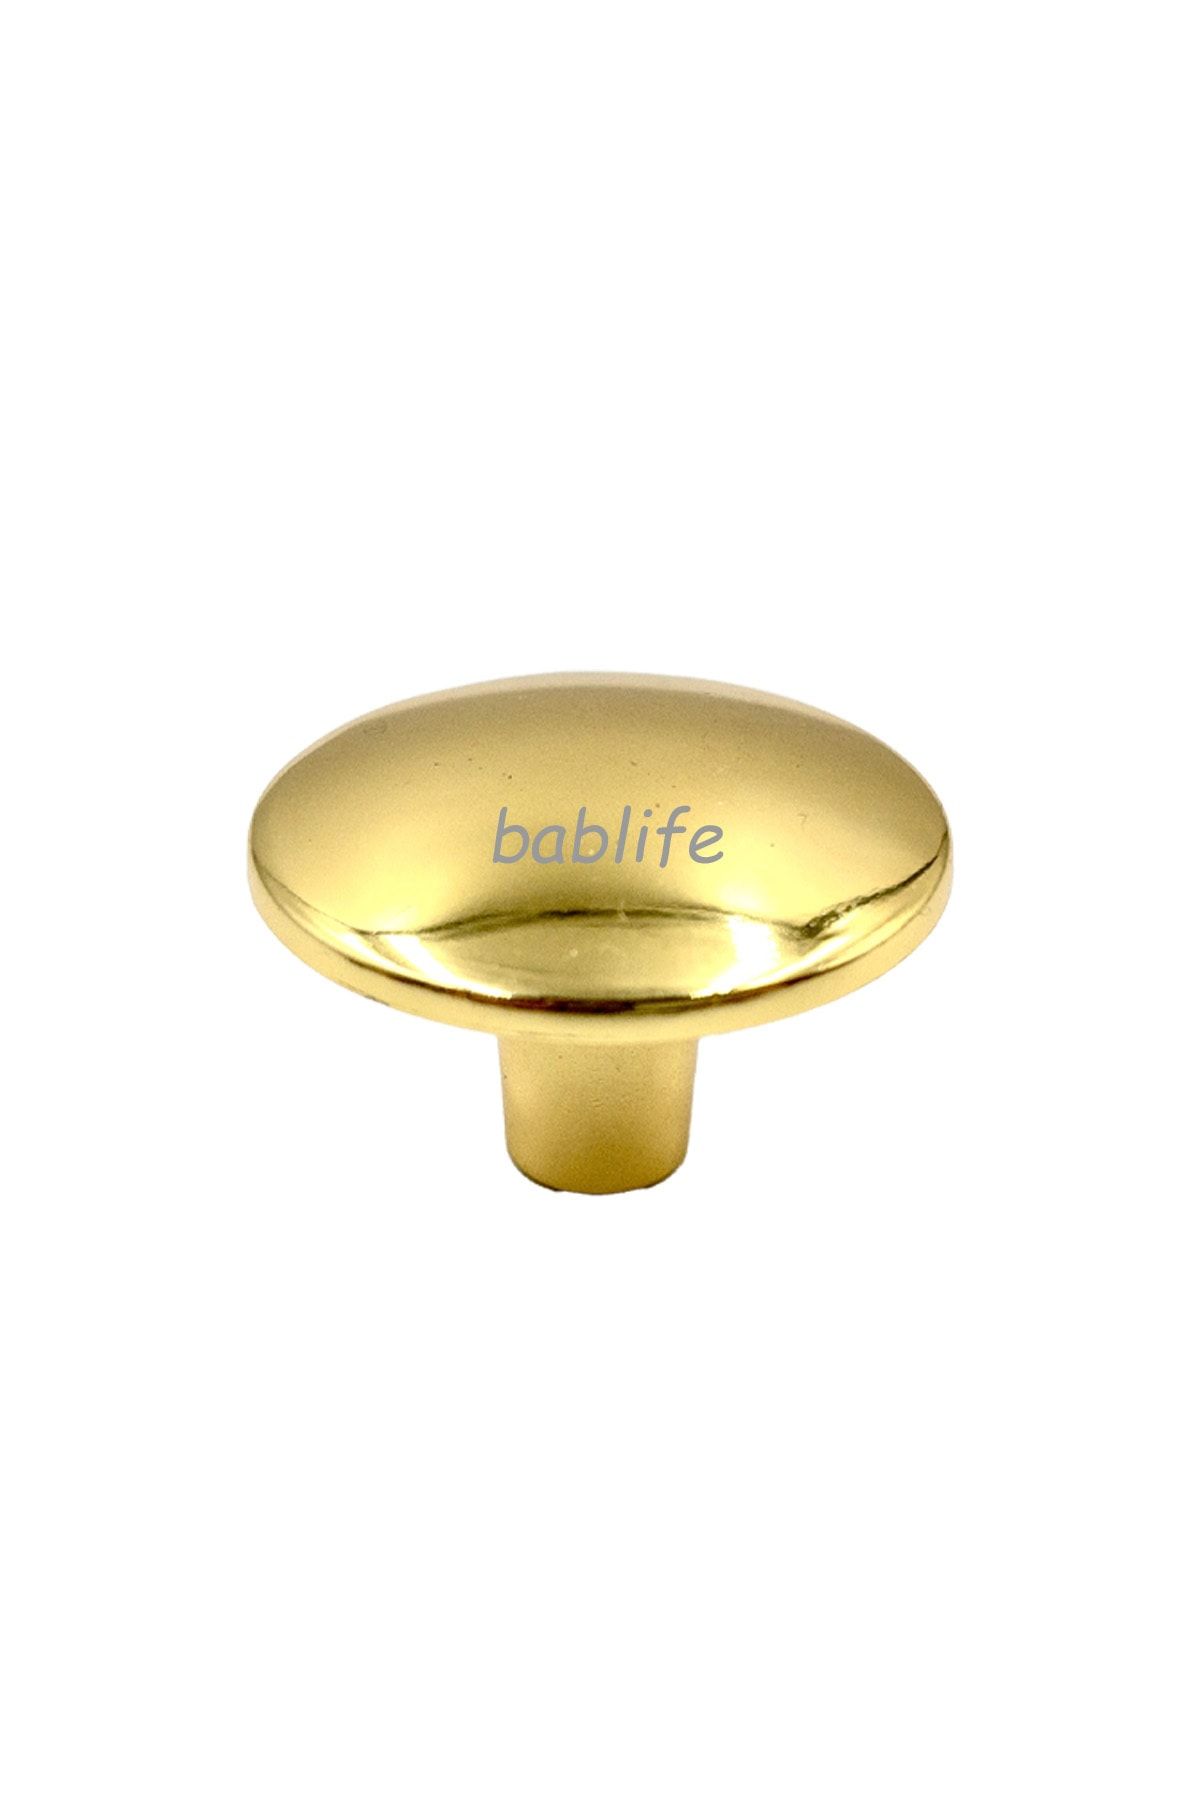 bablife Mantar Düğme Altın Sarısı 35mm Metal Lüks Çapında Çekmece Dolap Mobilya Kulpları